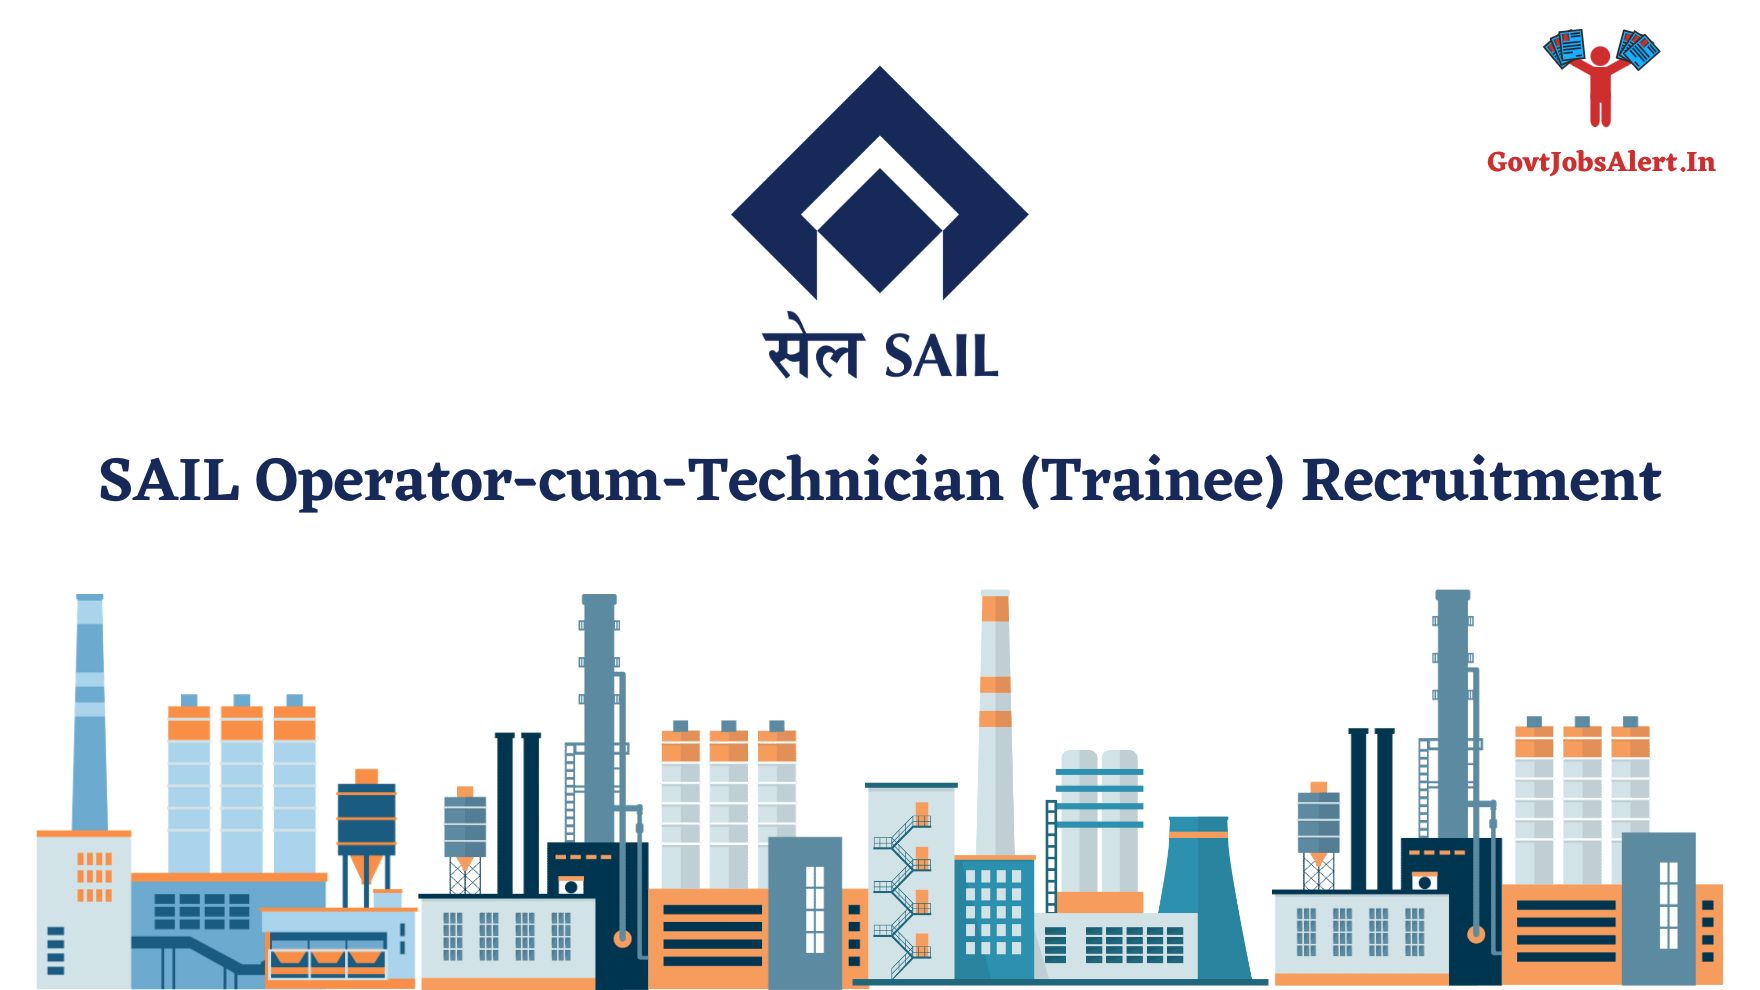 SAIL Operator-cum-Technician (Trainee) Recruitment